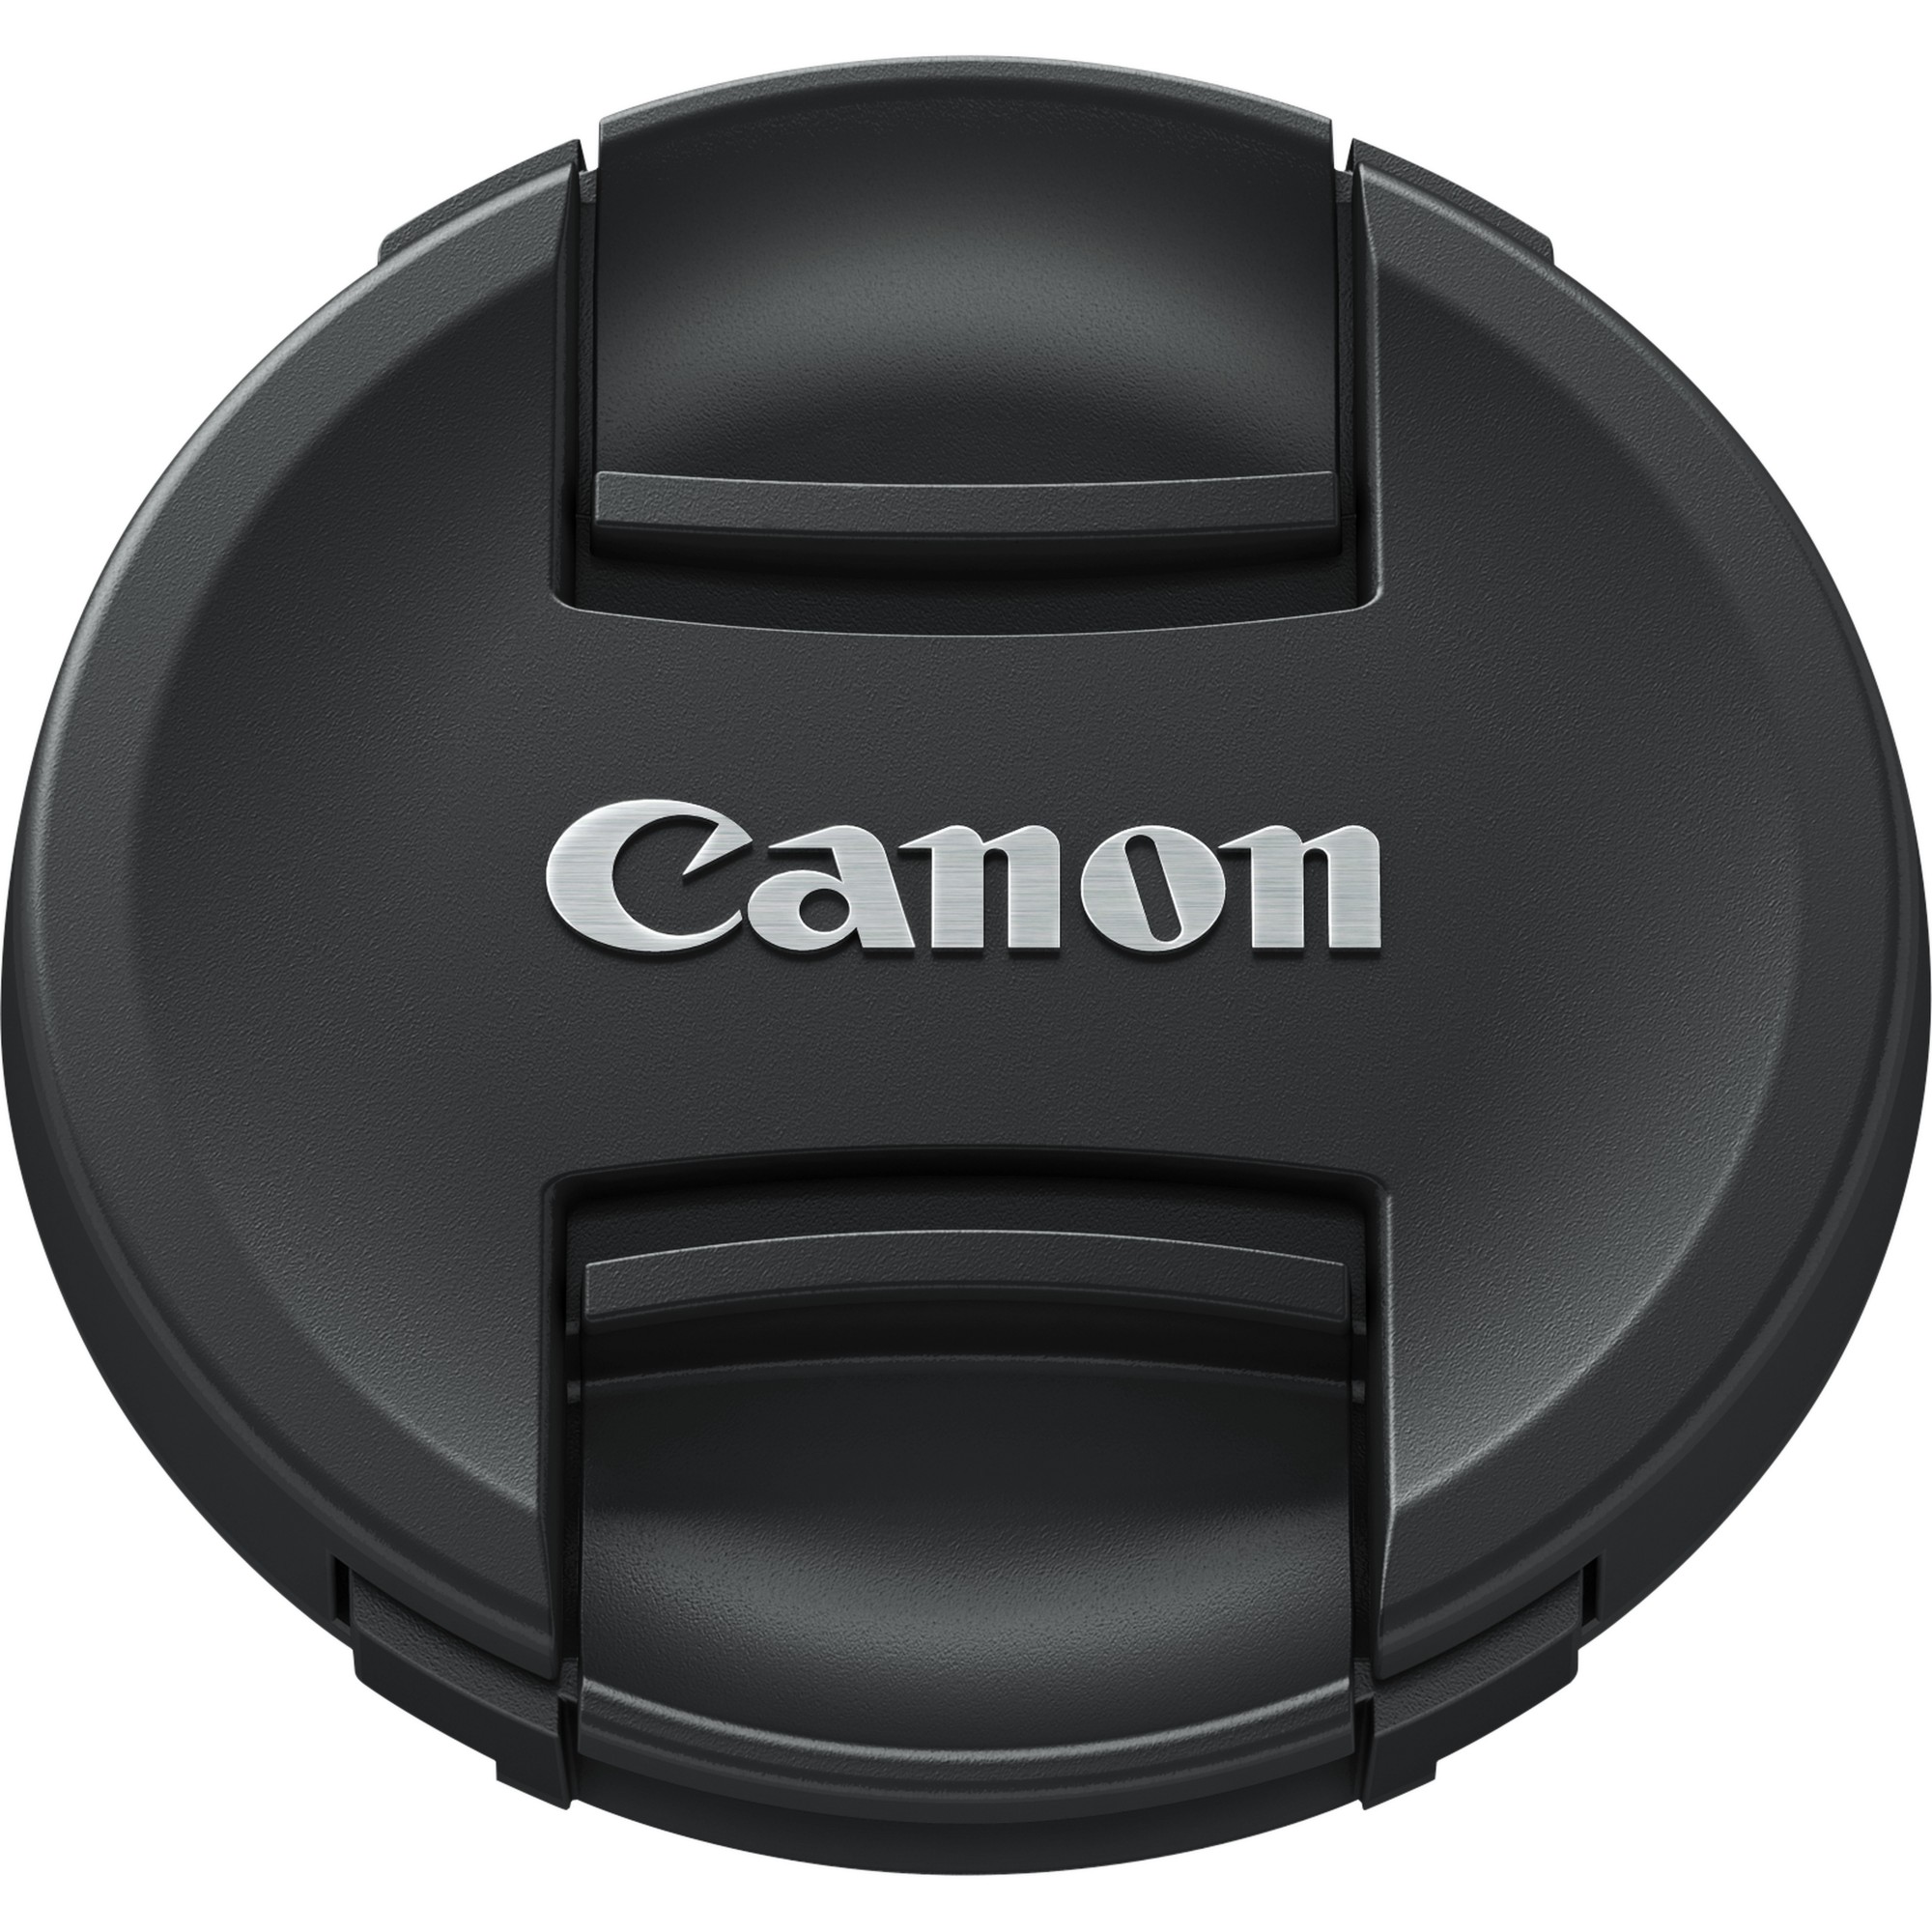 Photos - Other photo accessories Canon E-72II Lens Cap 6555B001 